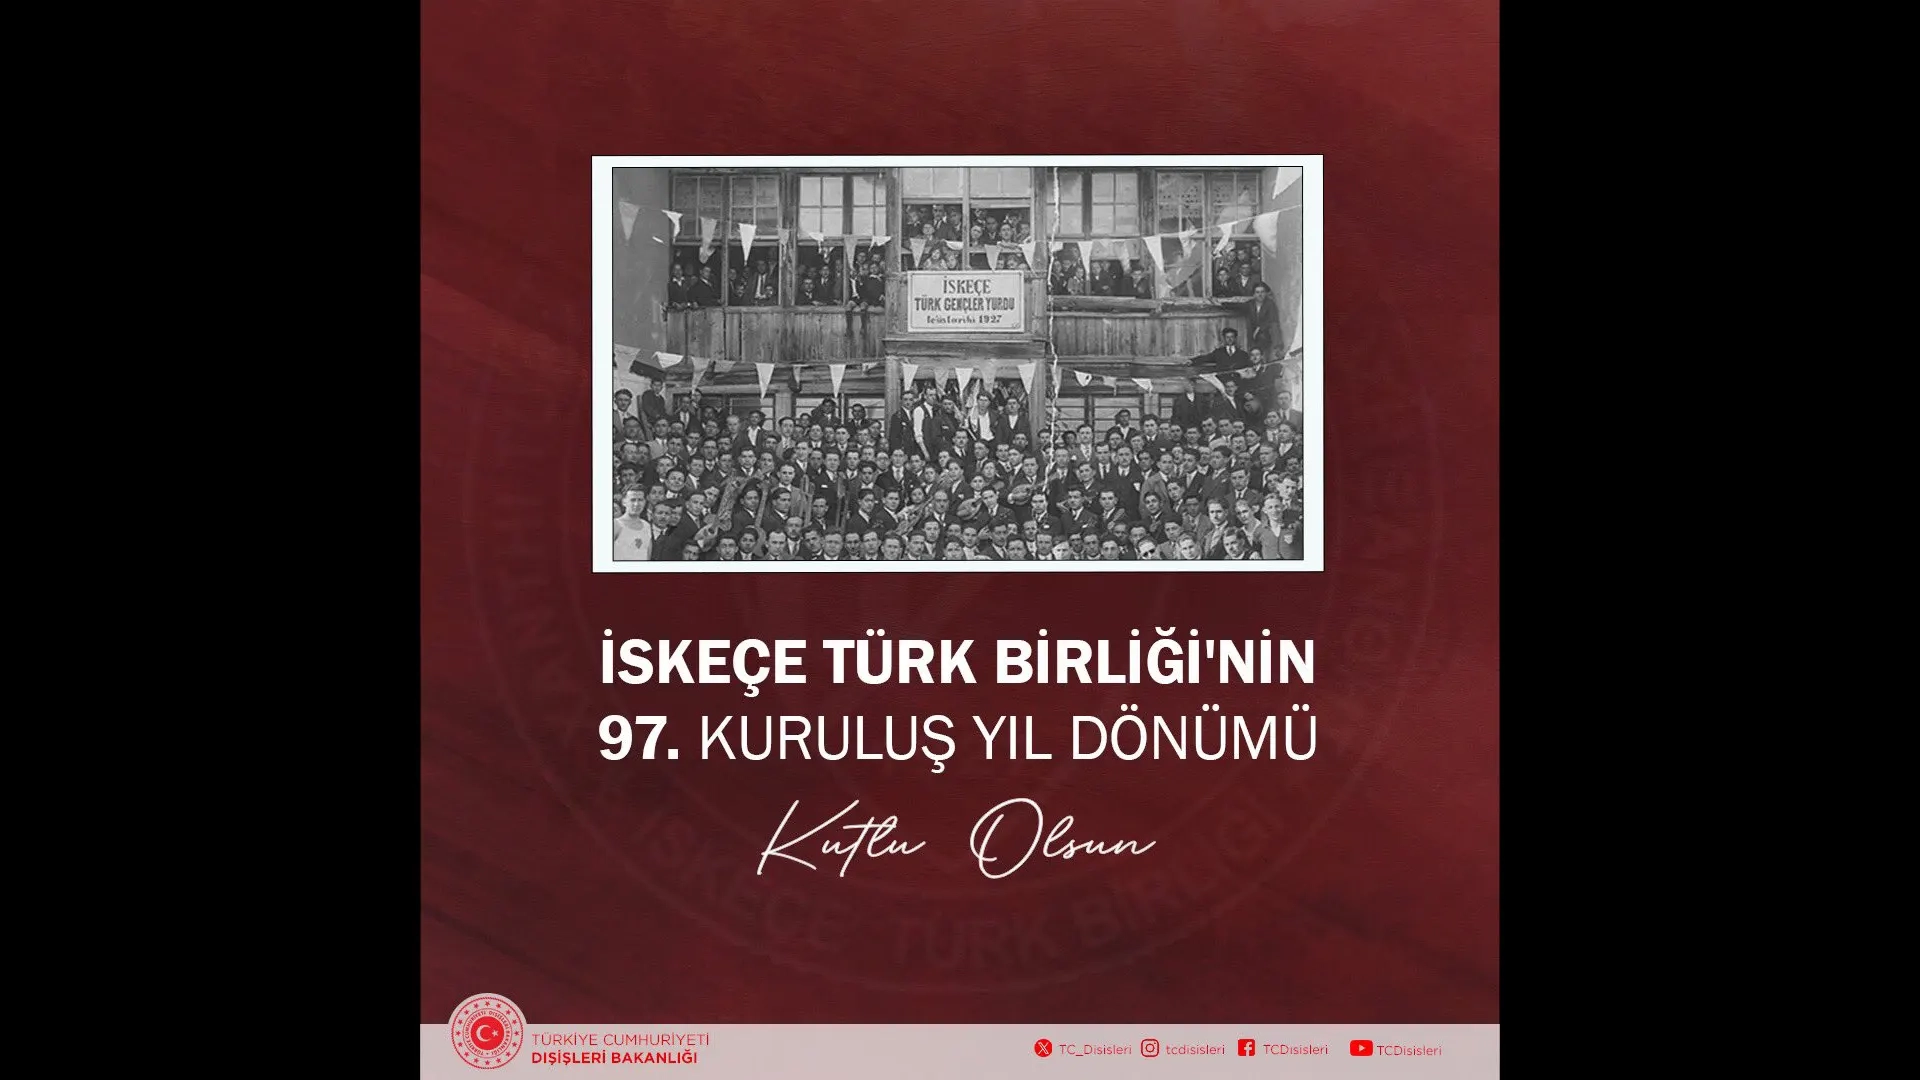 Türkiye Dışişleri Bakanlığı’ndan İskeçe Türk Birliği’ne destek mesajı